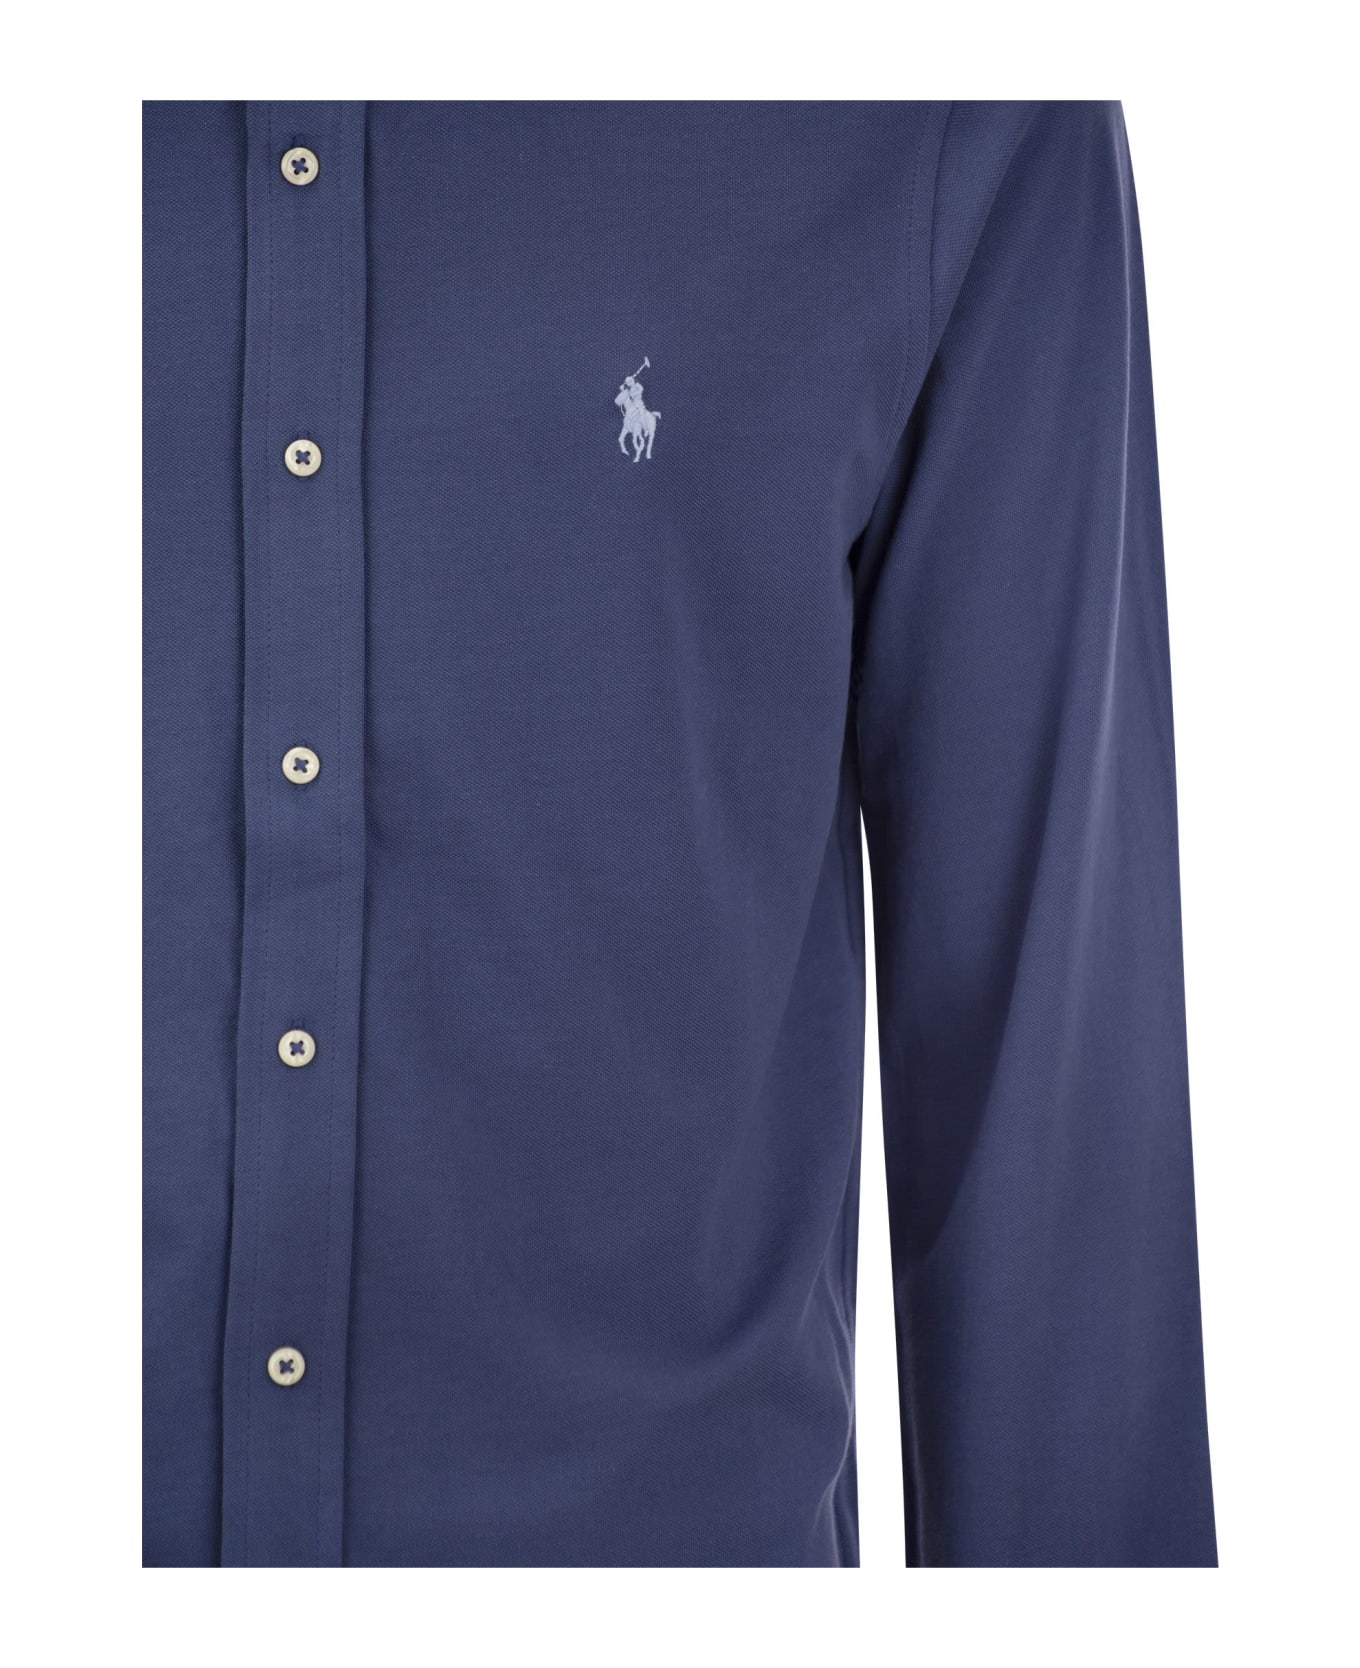 Polo Ralph Lauren Ultralight Pique Shirt - Avio